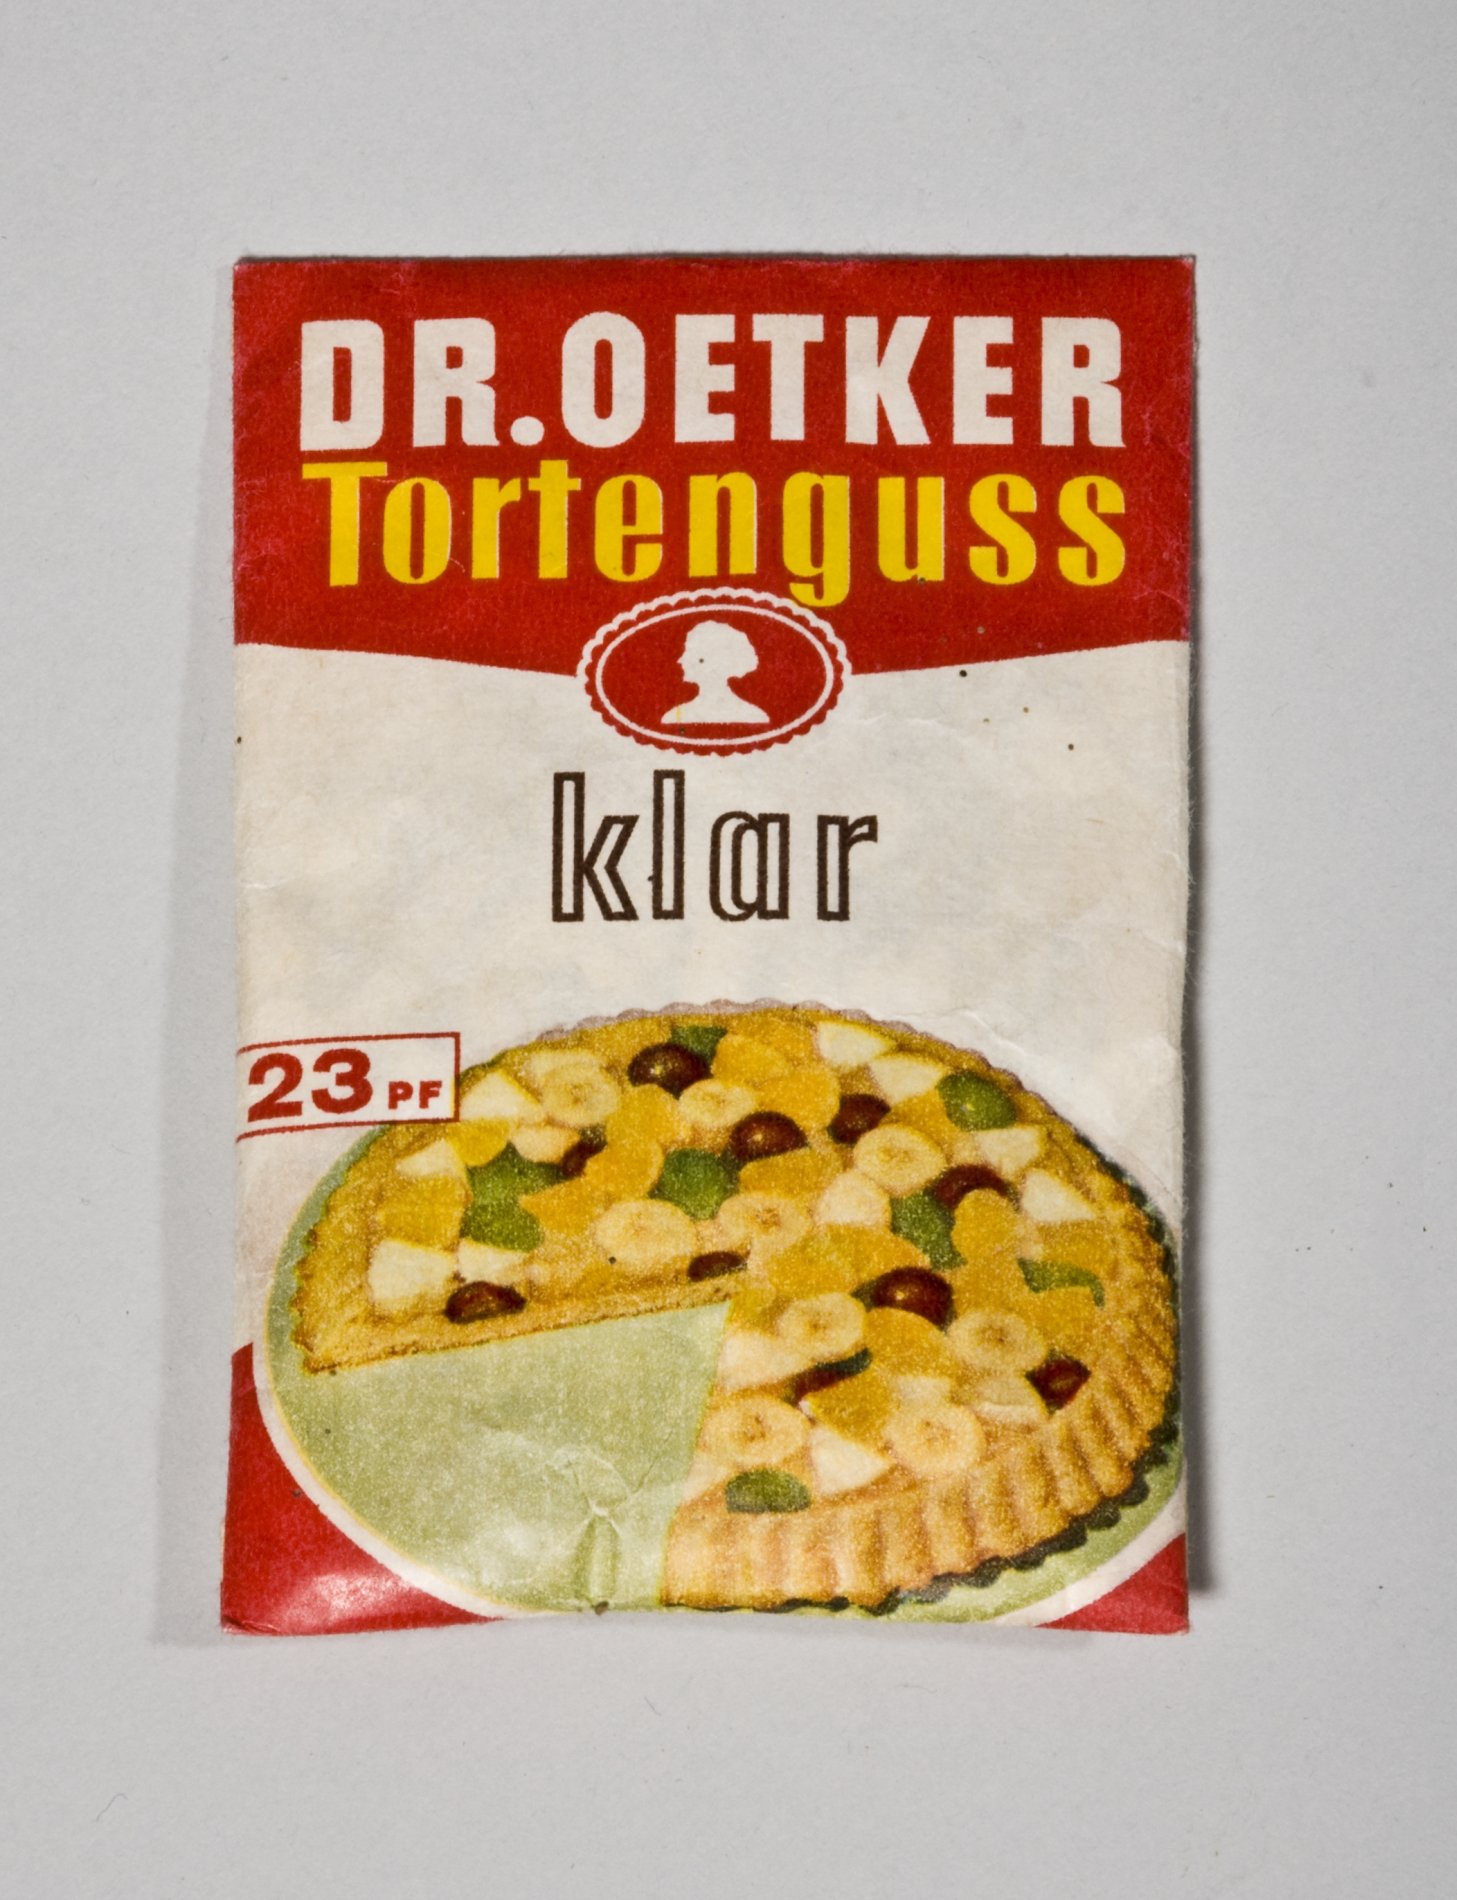 Päckchen "Tortenguss klar" von "Dr. Oetker" (Stiftung Domäne Dahlem - Landgut und Museum, Weiternutzung nur mit Genehmigung des Museums CC BY-NC-SA)